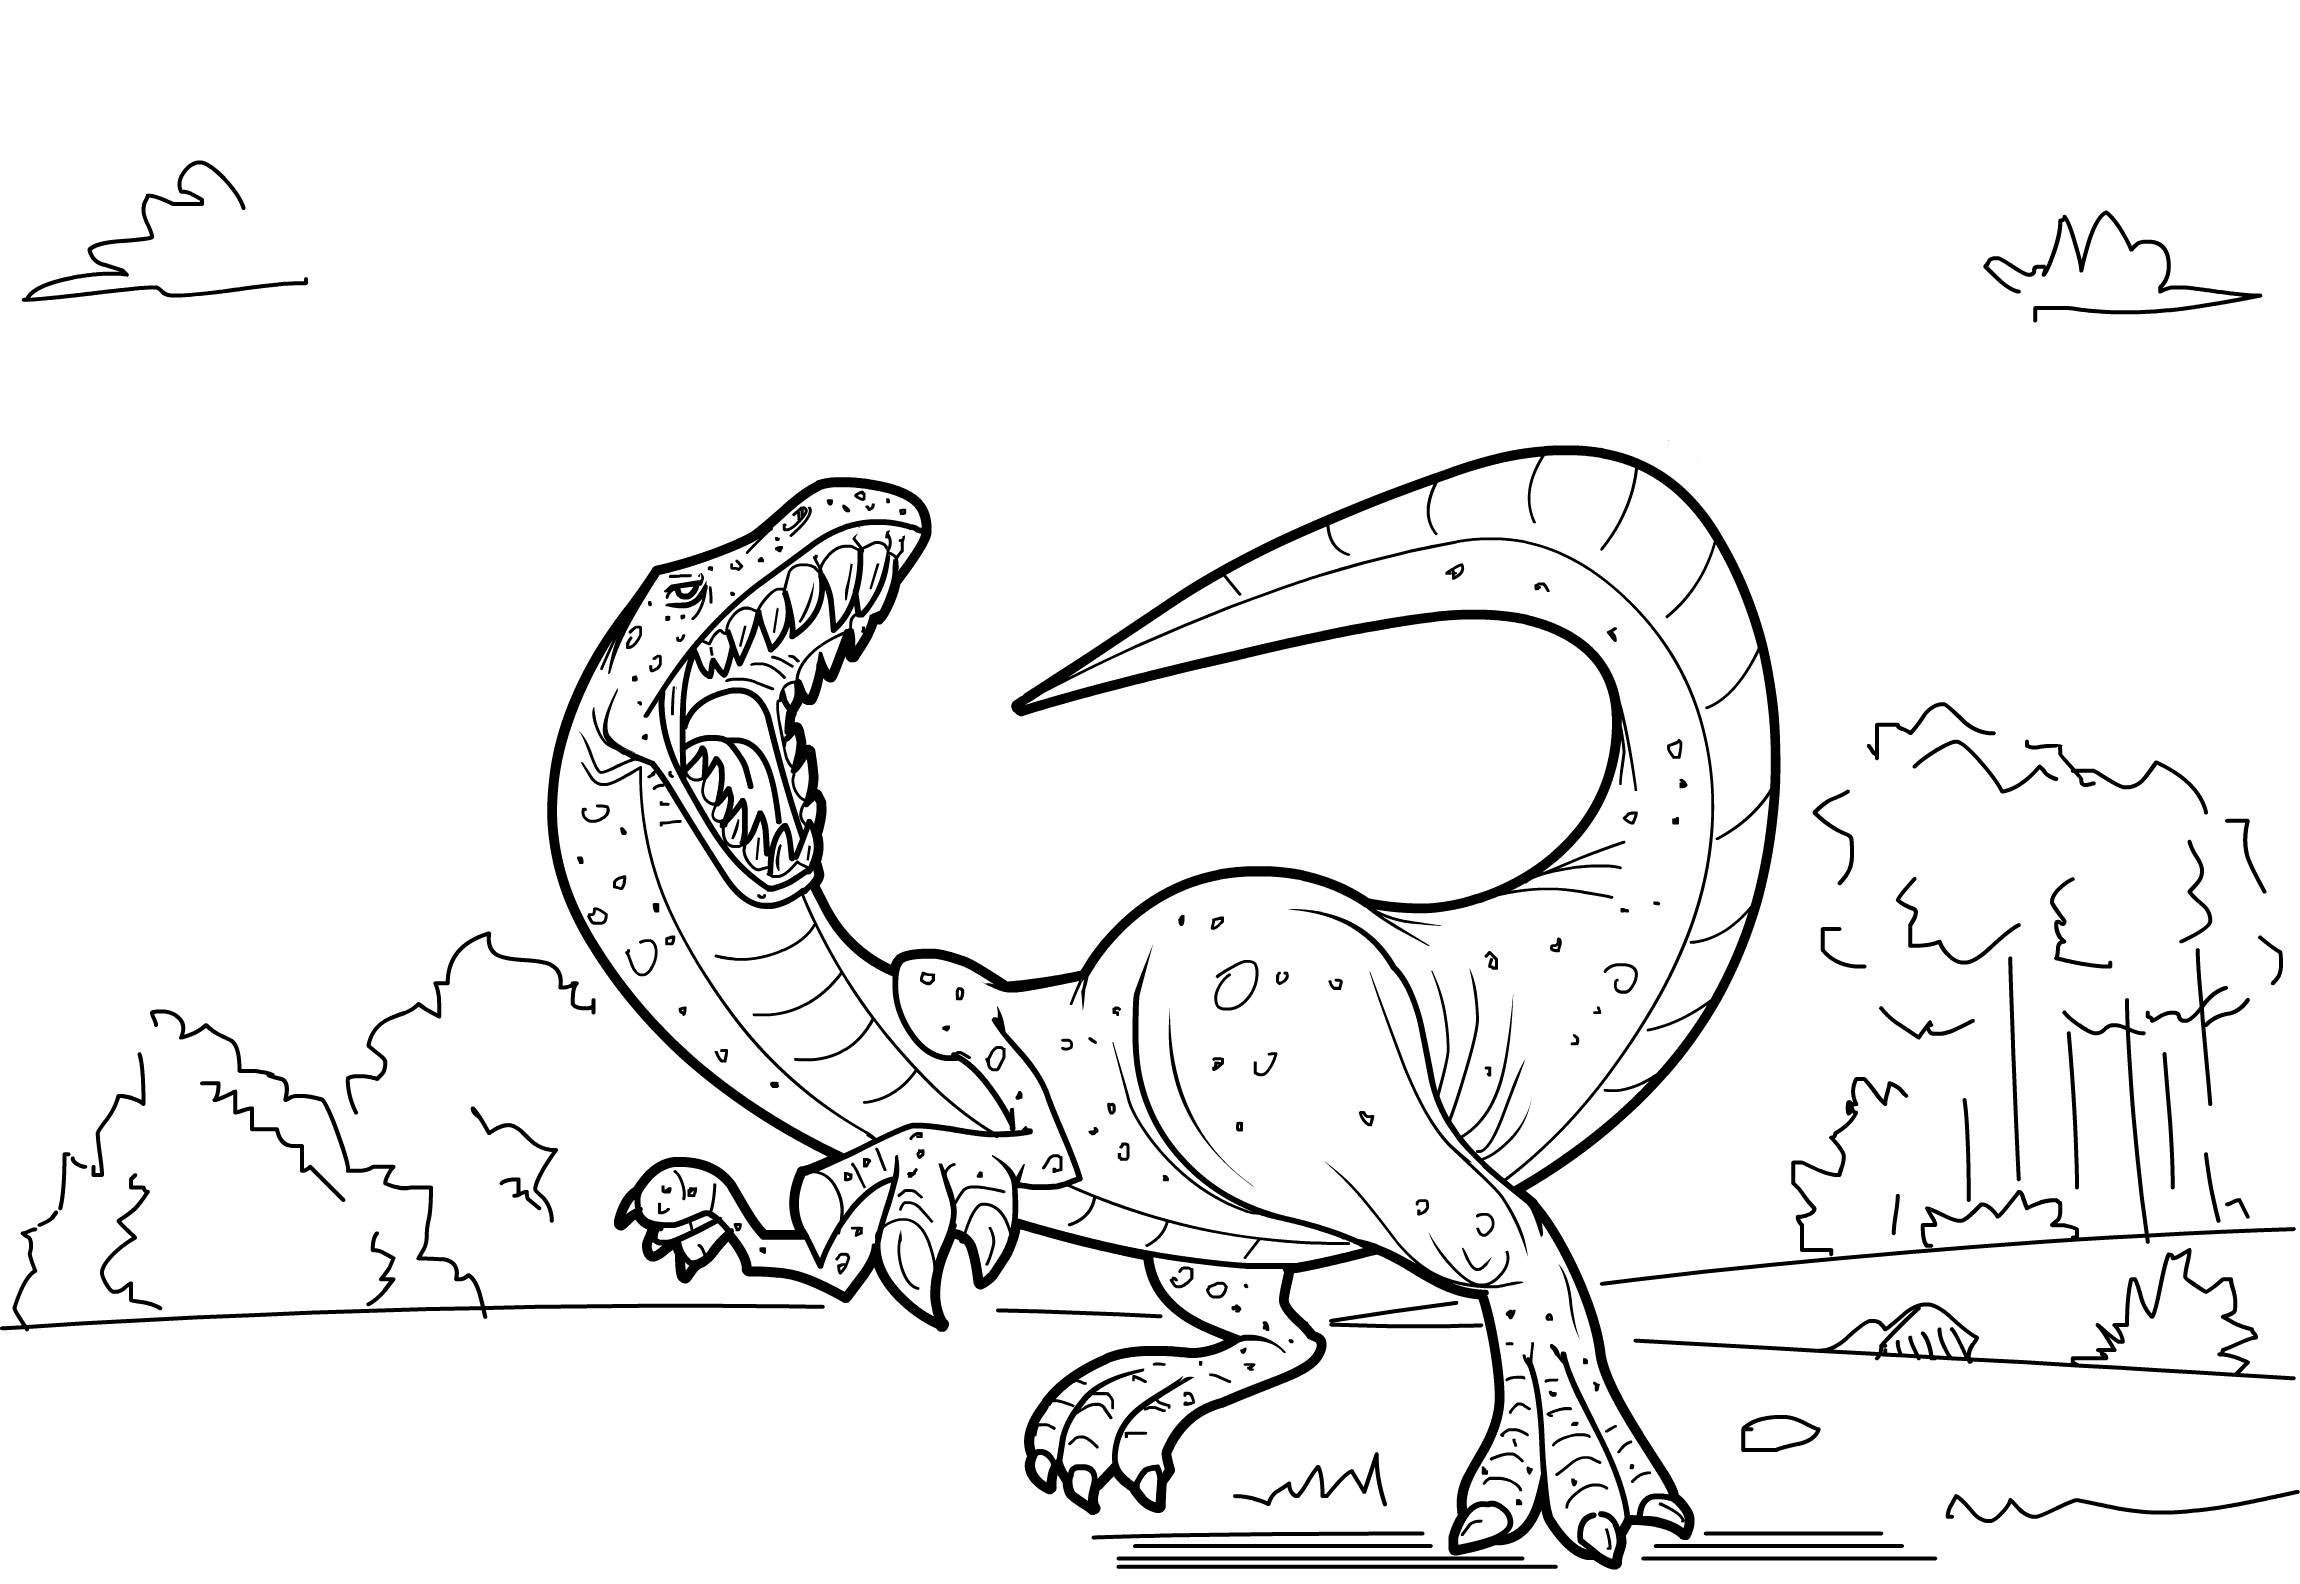 Раскраска динозавр формат а4. Раскраска динозавр Аллозавр. Раскраска динозавр Галгозавр. Динозавры / раскраска.